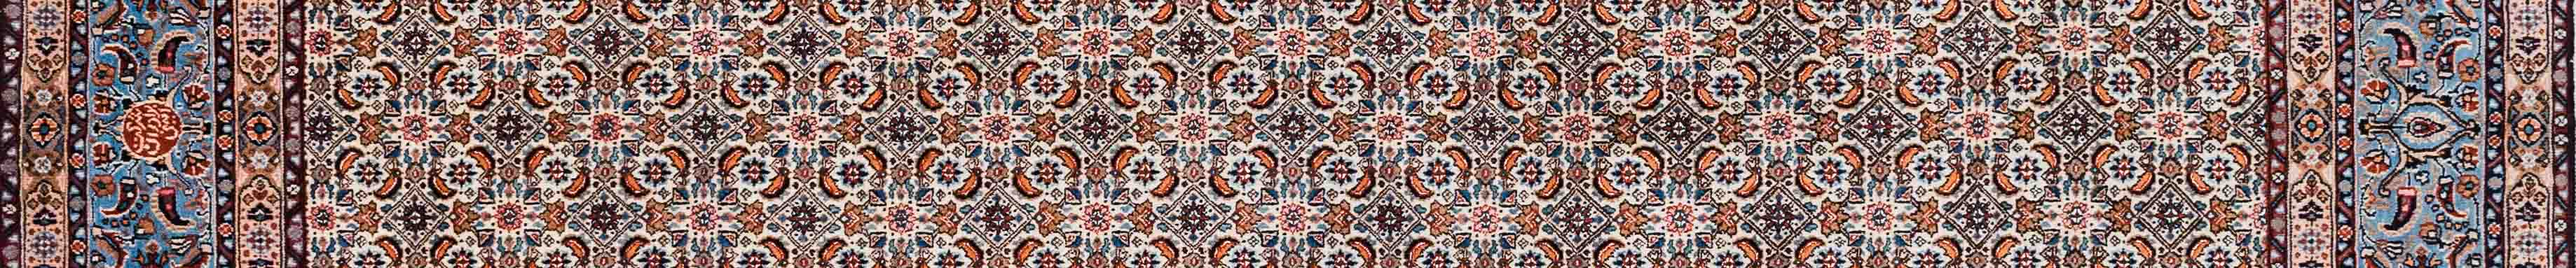 Moud Persian Carpet Rug N1Carpet Canada Montreal Tapis Persan 3400